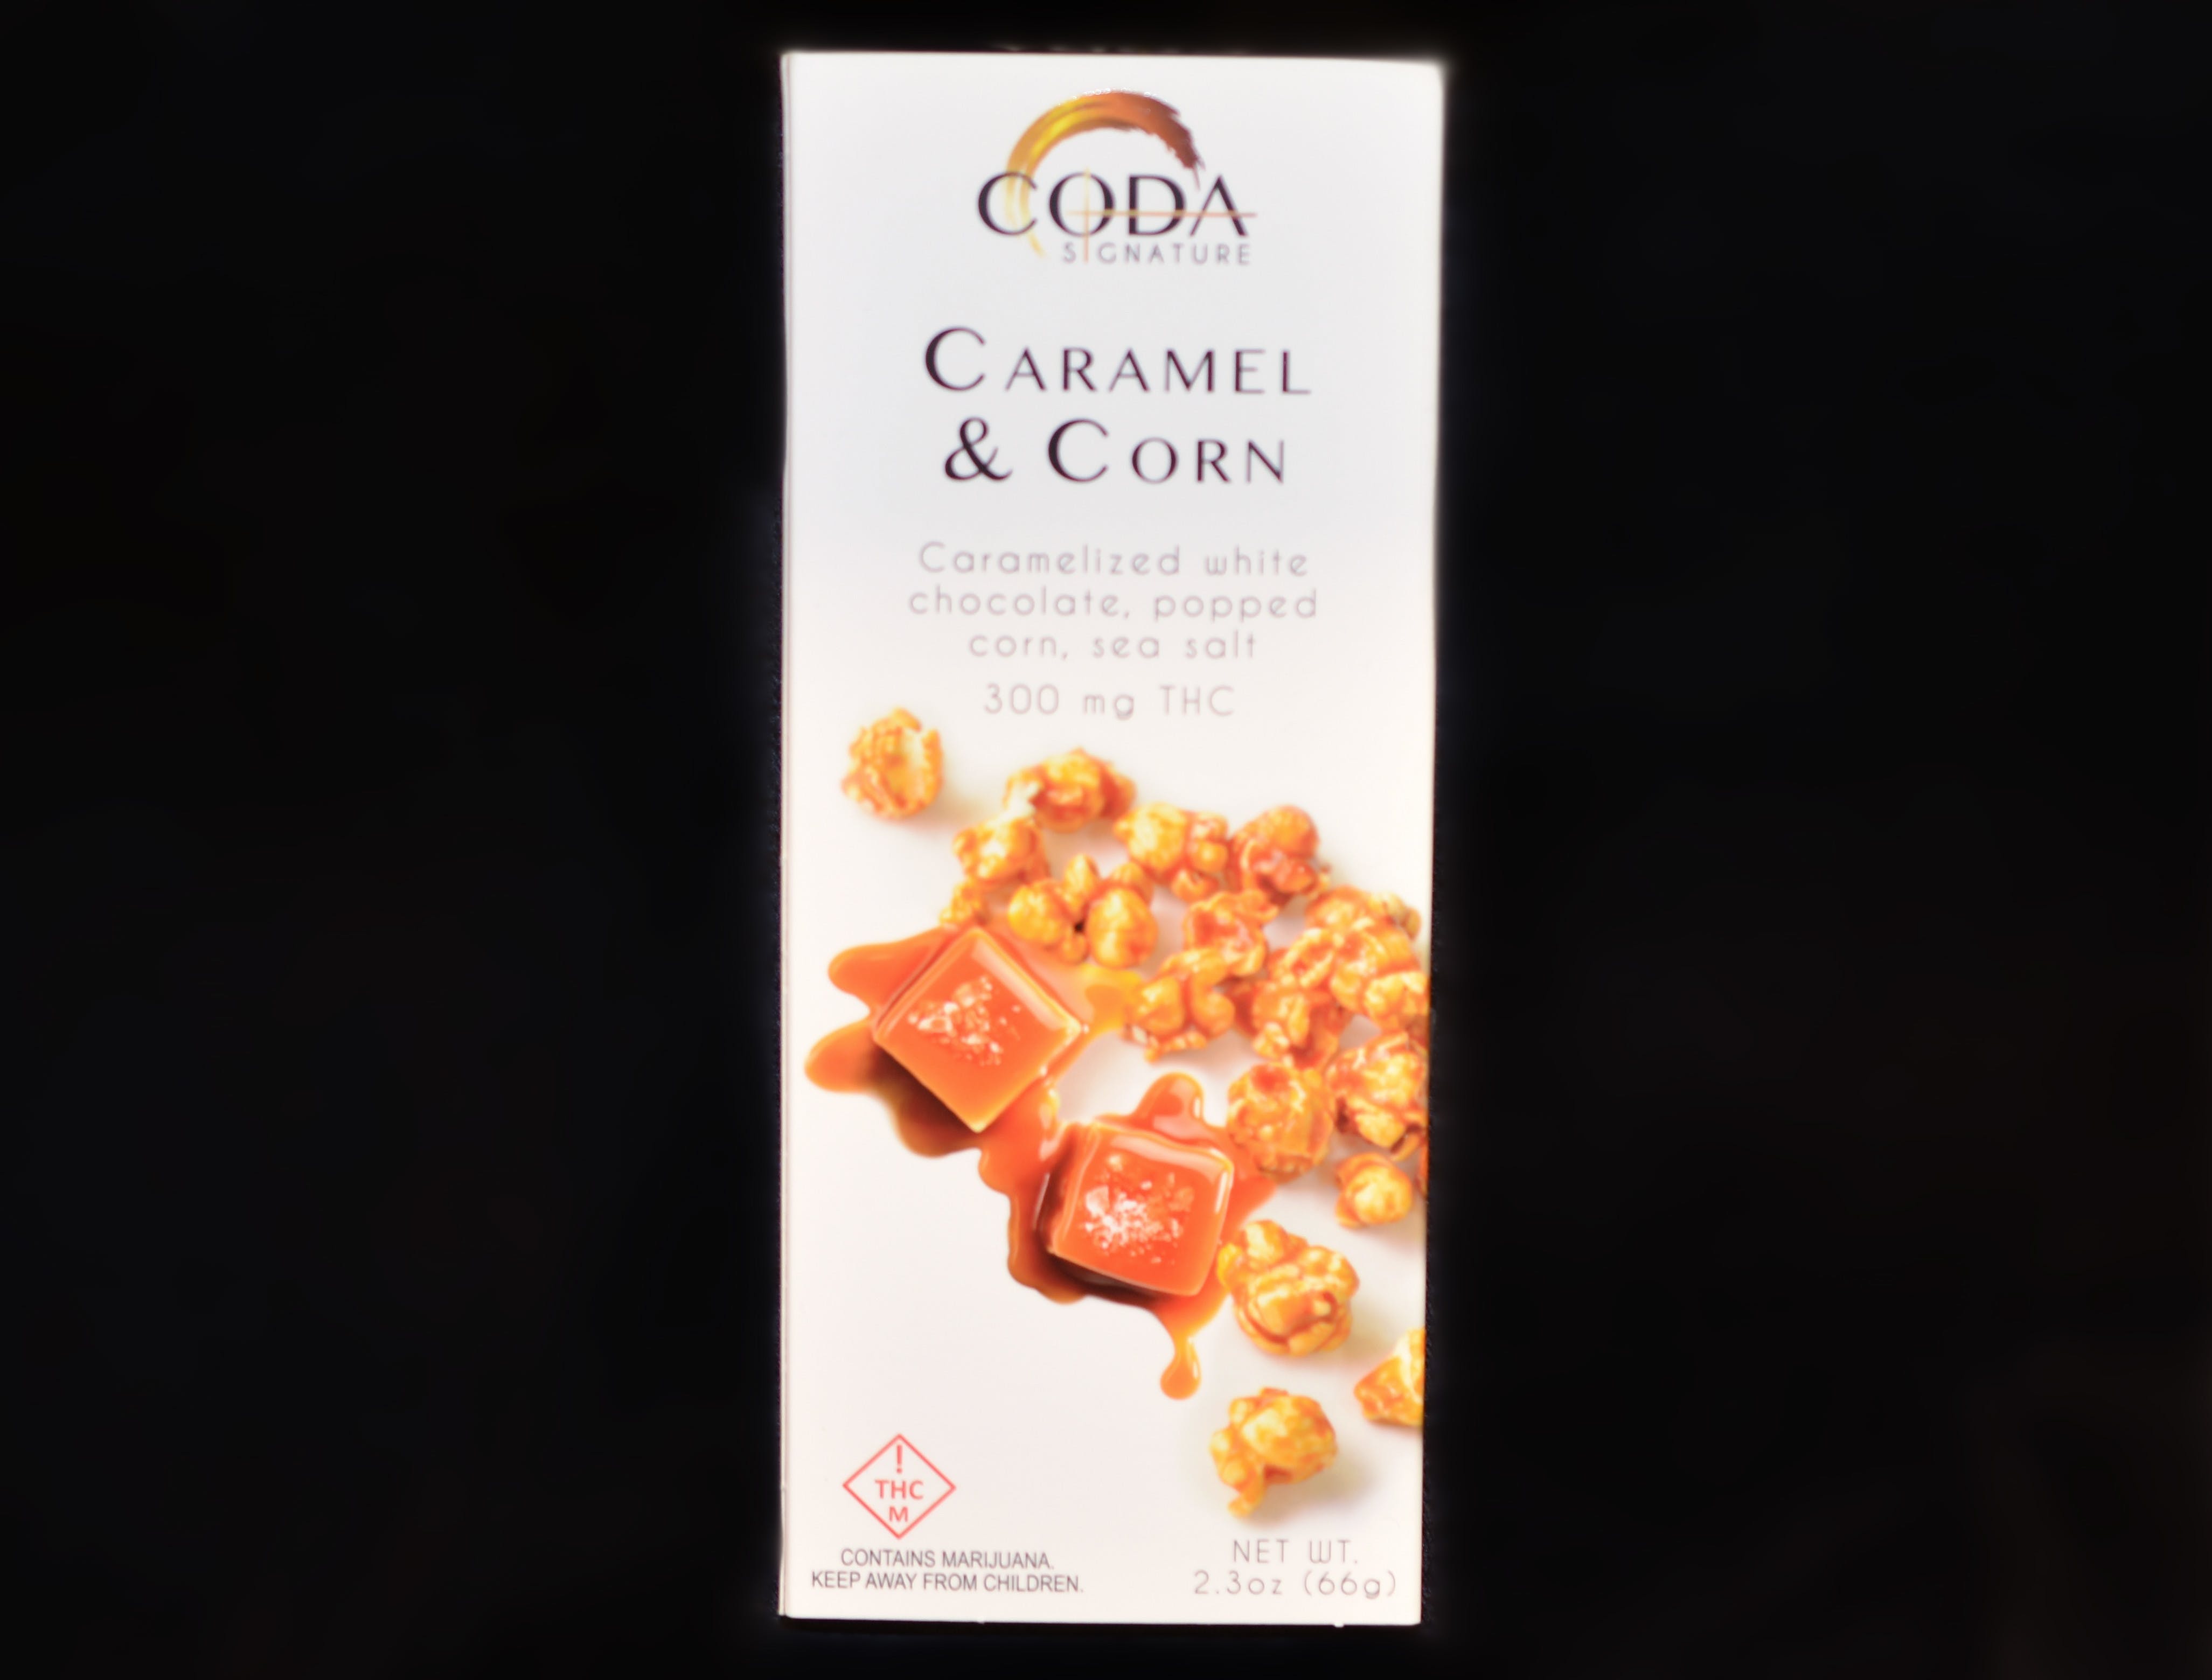 edible-coda-signature-caramel-a-corn-bar-300-mg